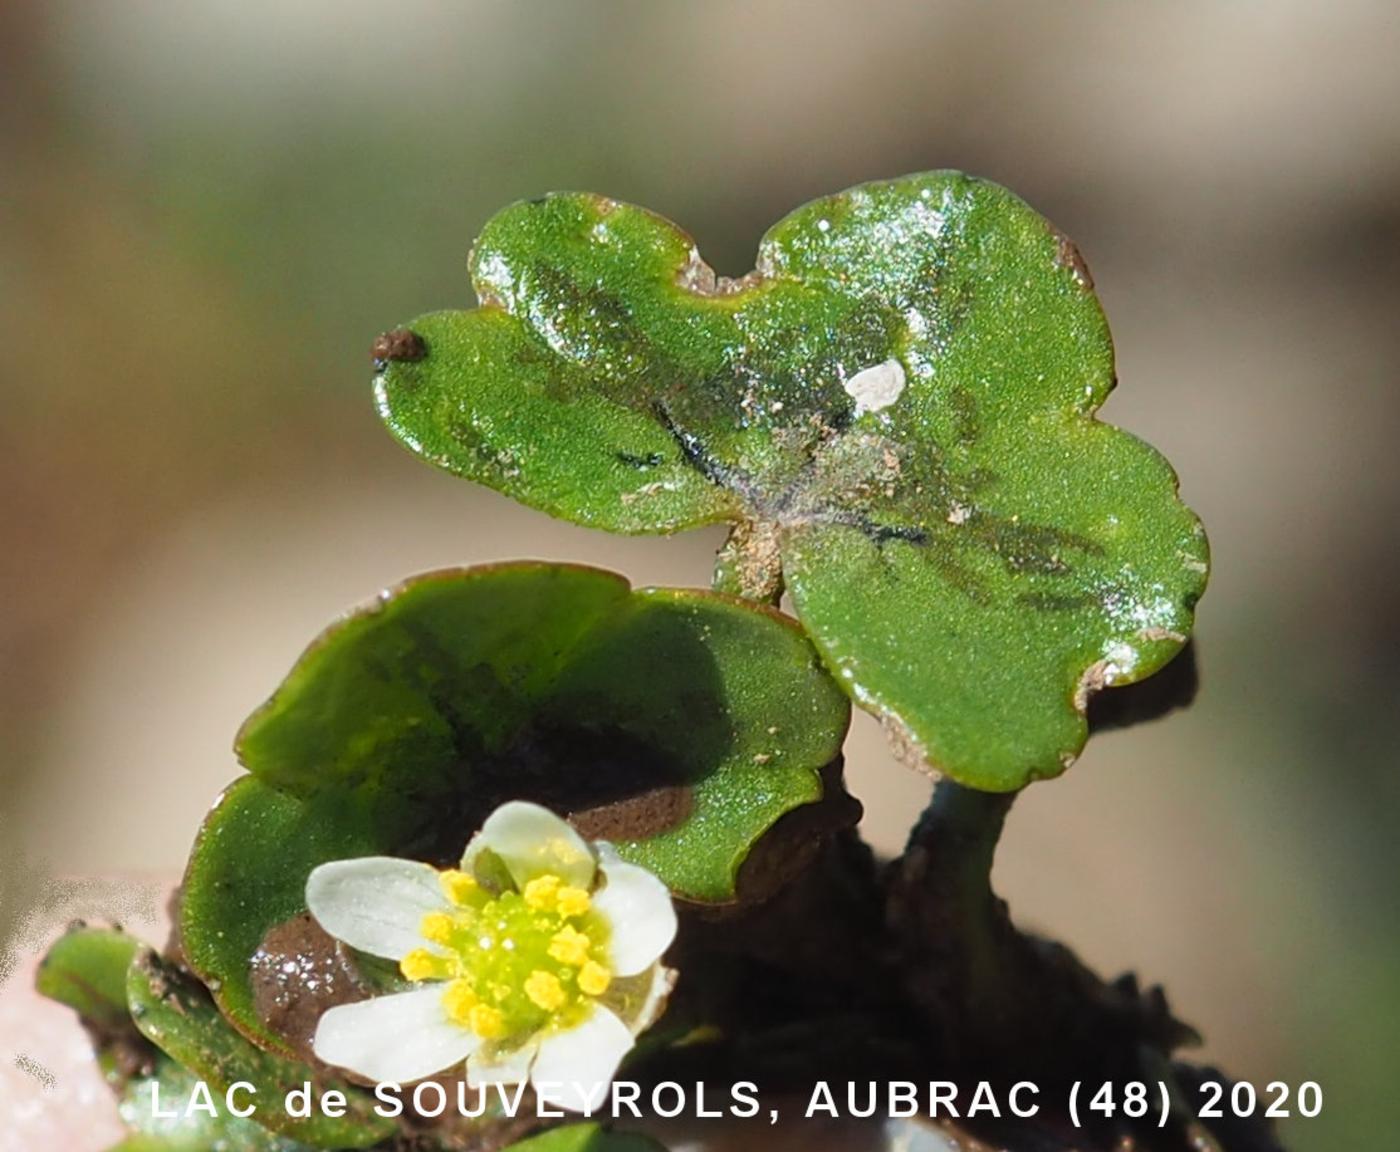 Crowfoot, Ivy-leaved leaf